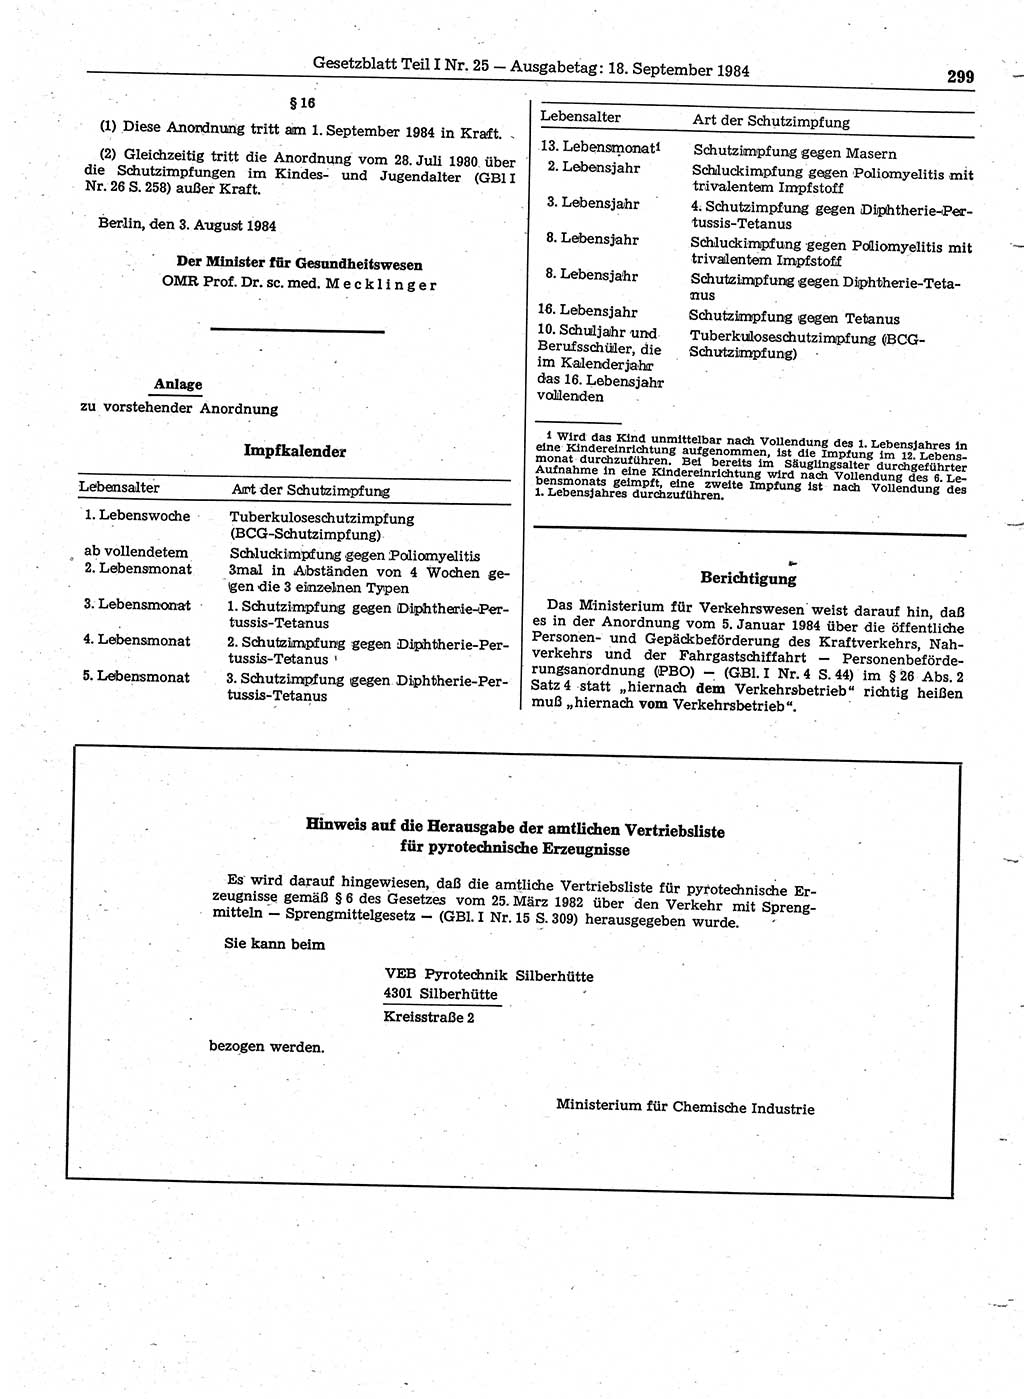 Gesetzblatt (GBl.) der Deutschen Demokratischen Republik (DDR) Teil Ⅰ 1984, Seite 299 (GBl. DDR Ⅰ 1984, S. 299)